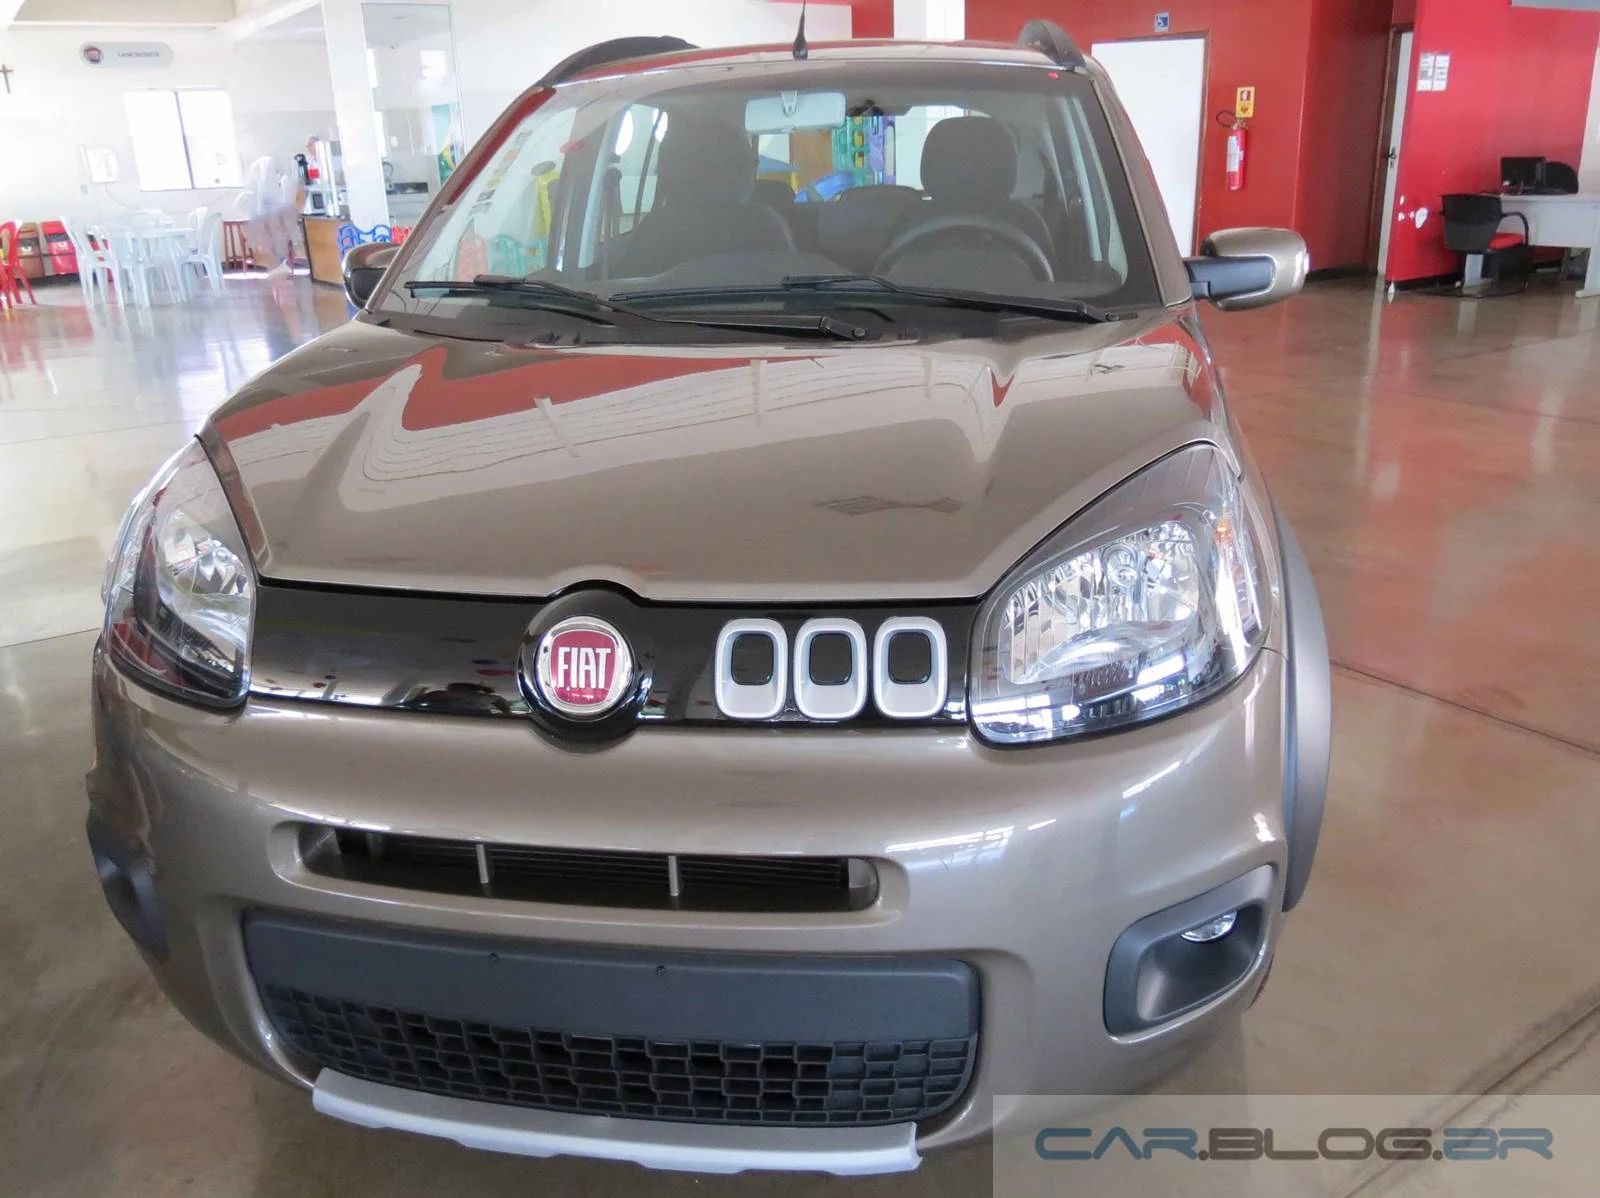 Fiat Uno é carro usado popular fácil de manter; veja qualidades e